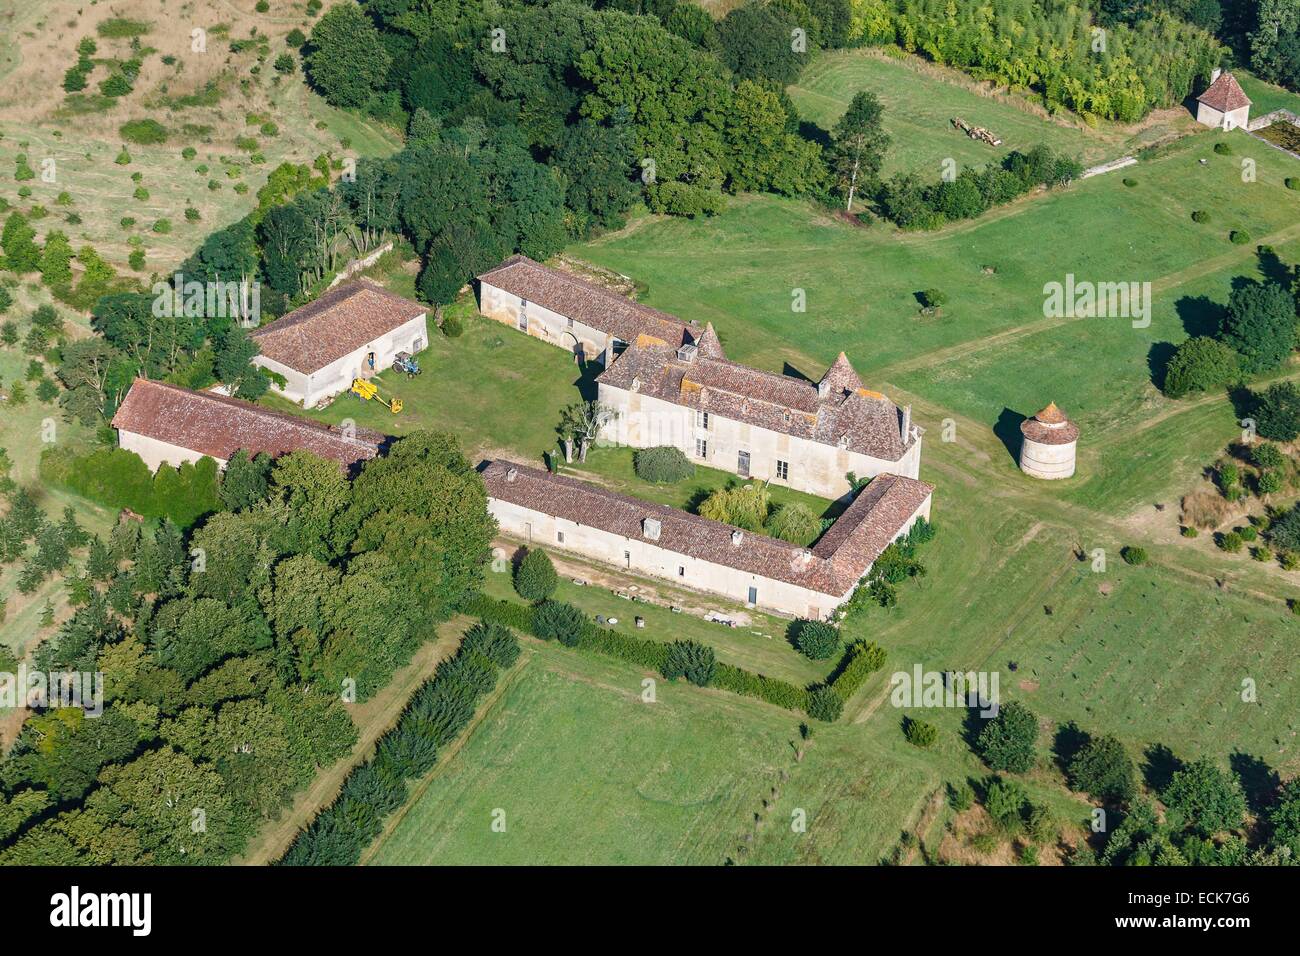 France, Vienne, Saint Maurice la Clouere, La Motte castle (aerial view) Stock Photo